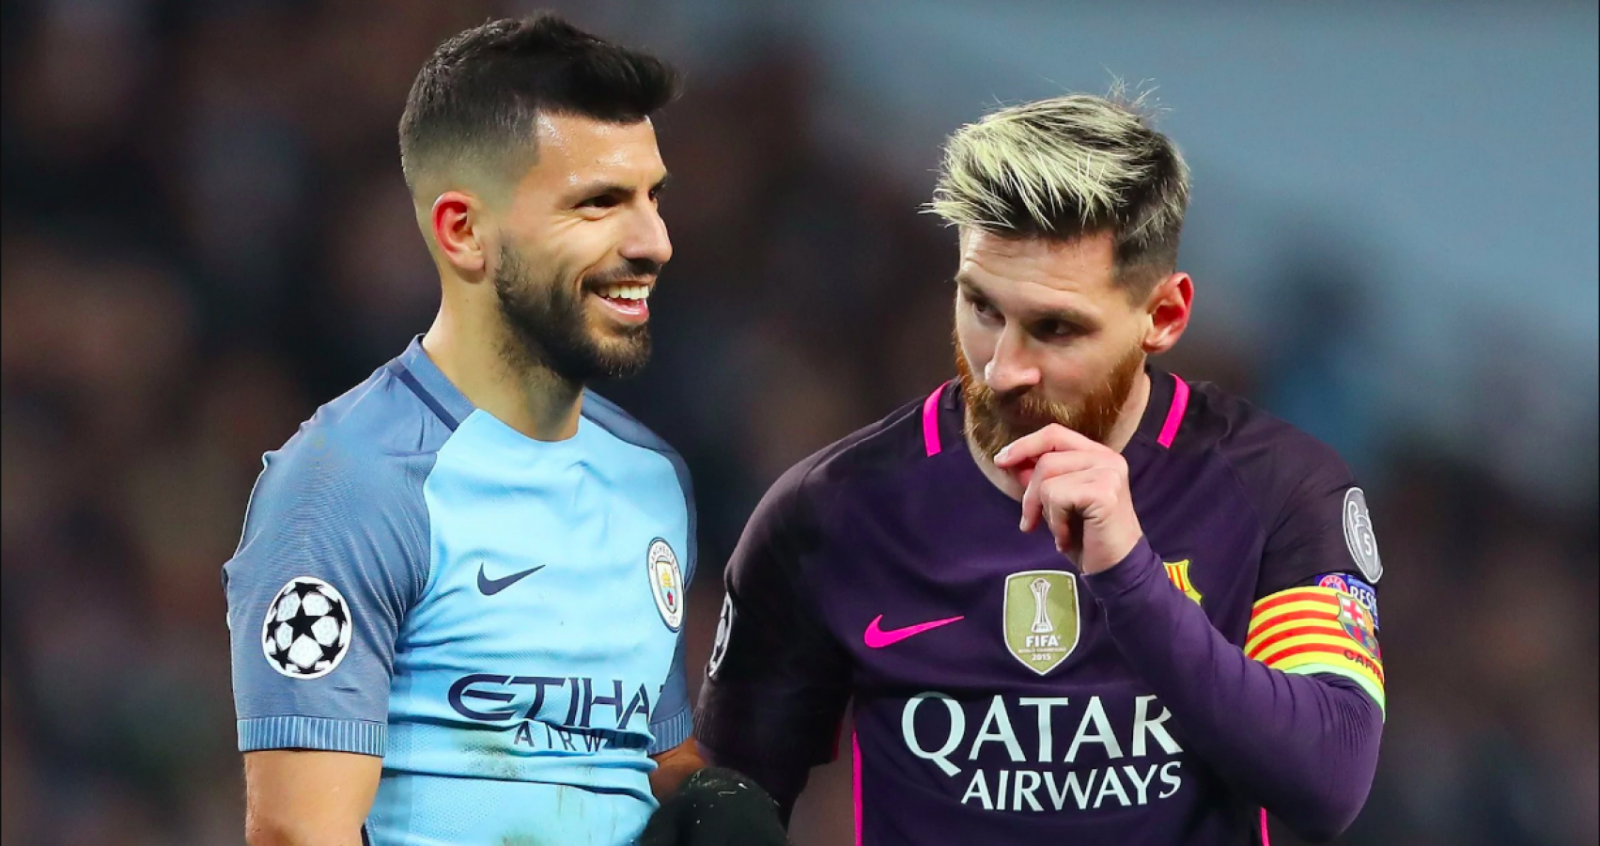 Imagen Messi y Agüero siempre enfrentados, ¿jugarán juntos?